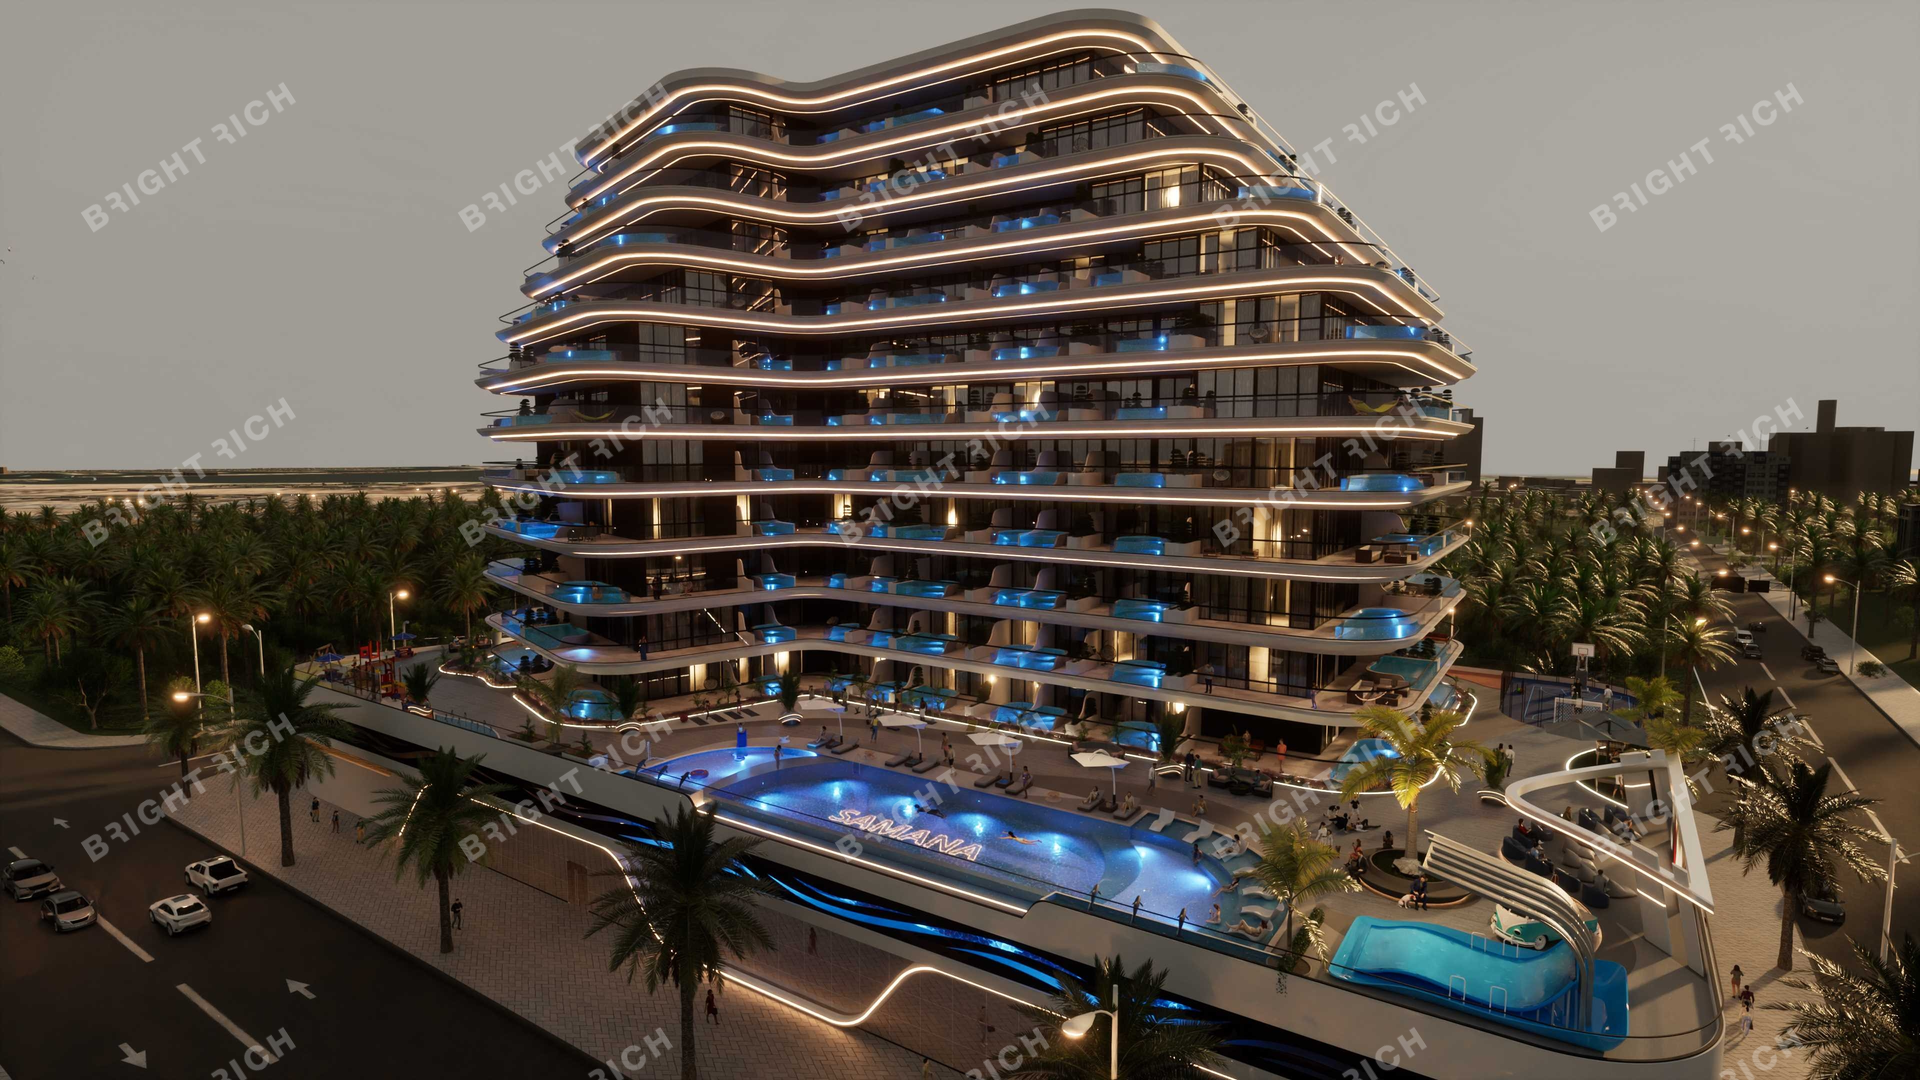 Samana Portofino, apart complex in Dubai - 53